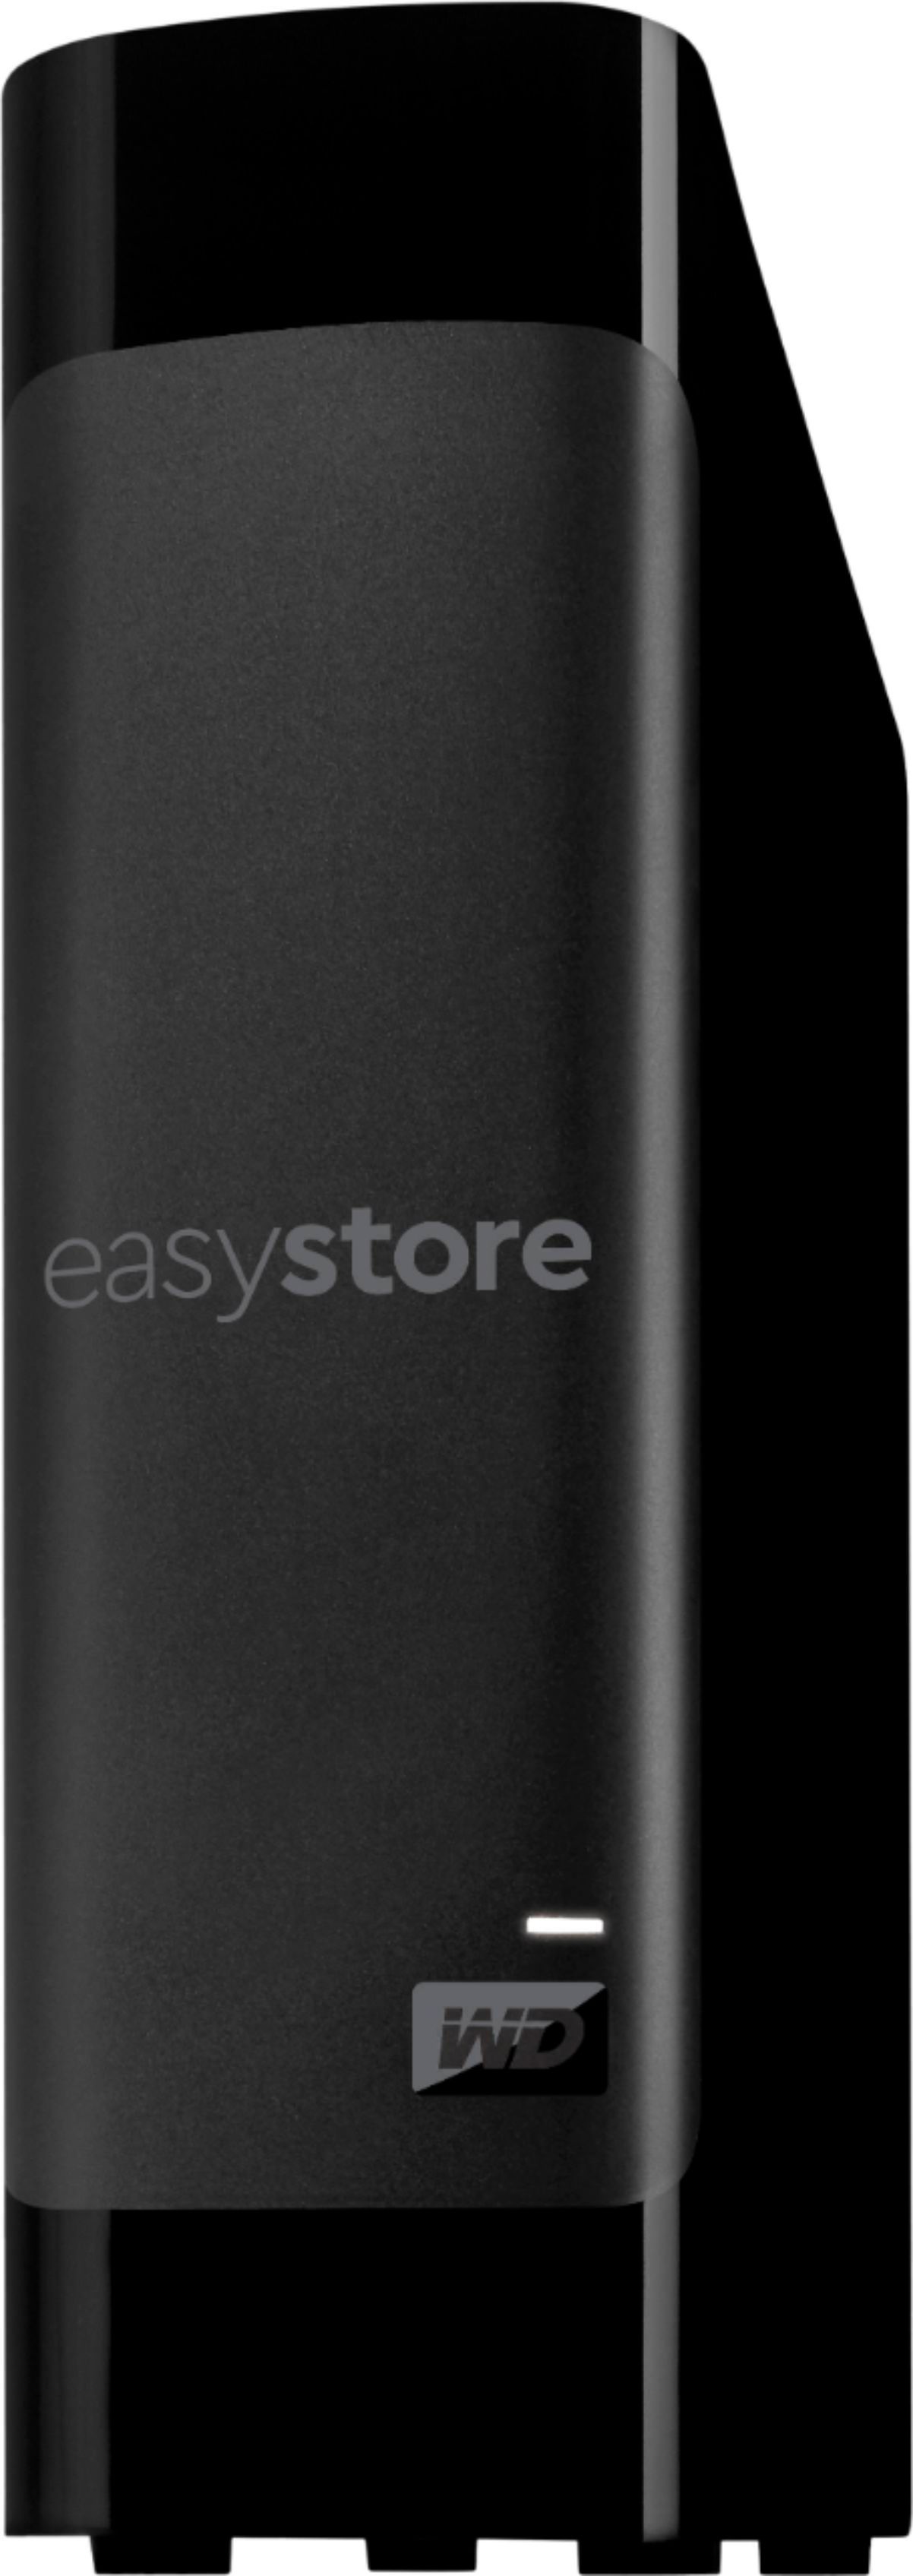 中古 さくら機電WD Easystore 外付けUSB 3.0 12TB ハードドライブ ブラック